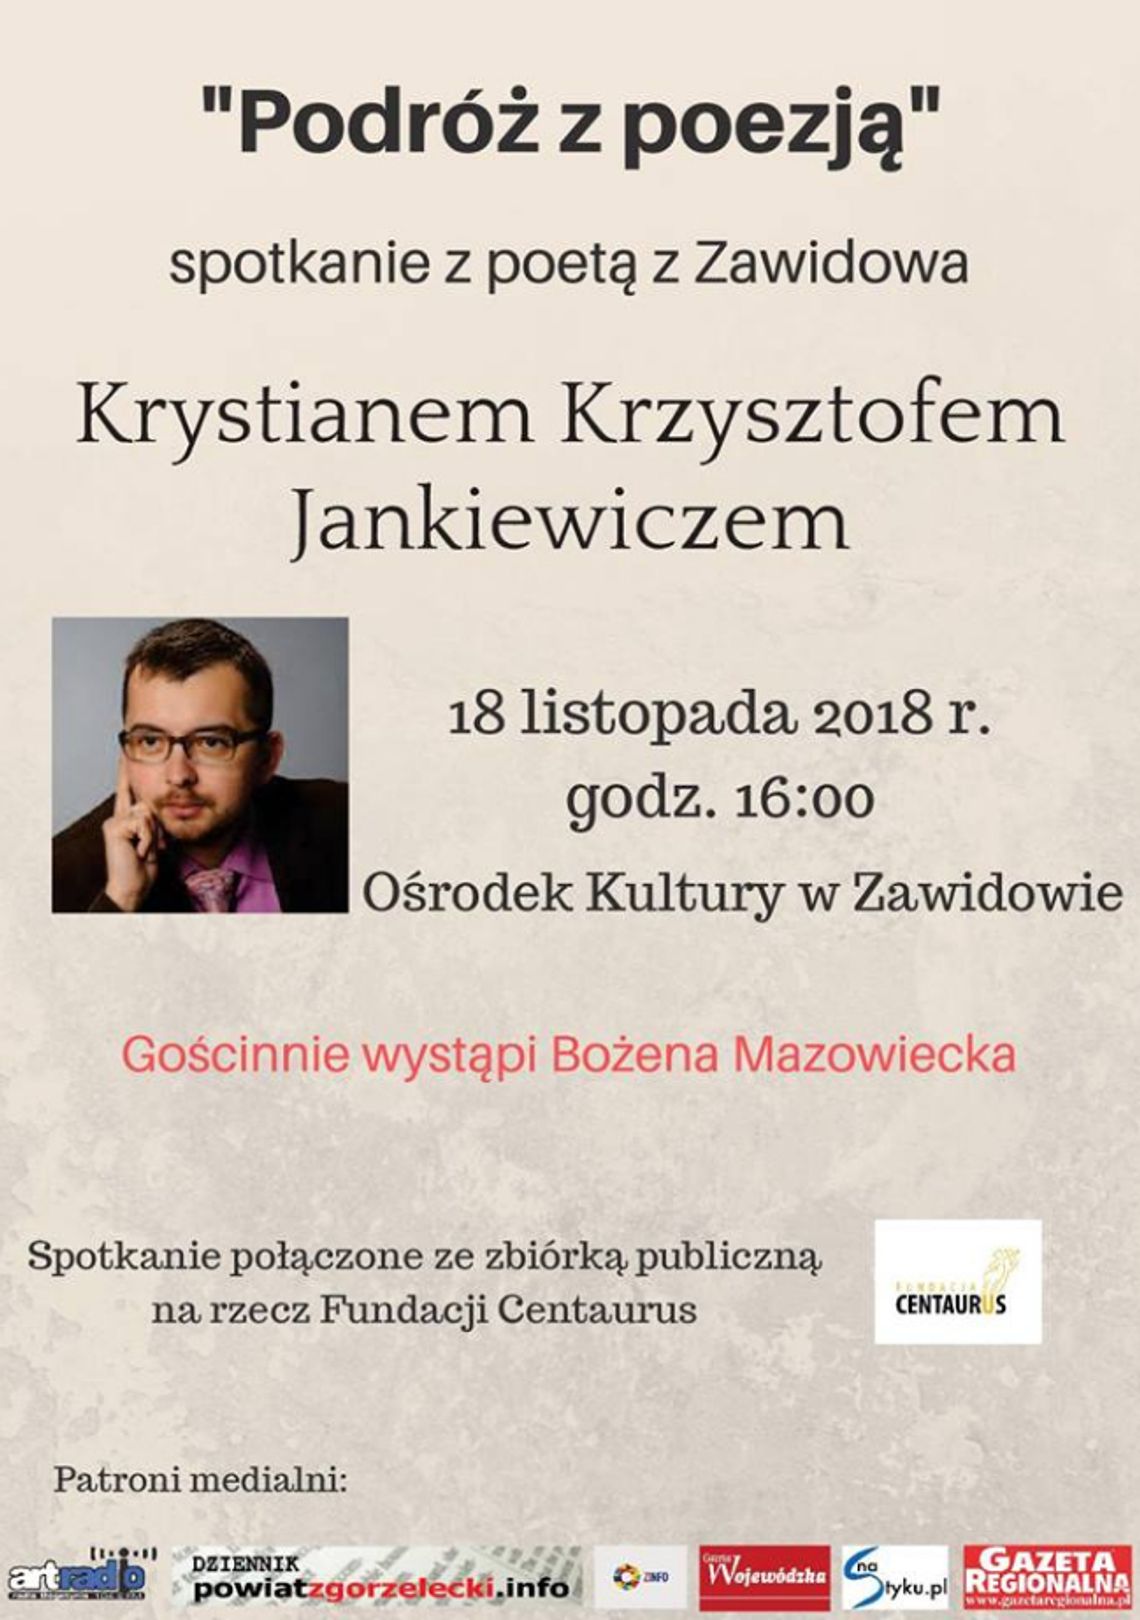 "Podróż z poezją - Poeta z Zawidowa" Krystiana Krzysztofa Jankiewicza